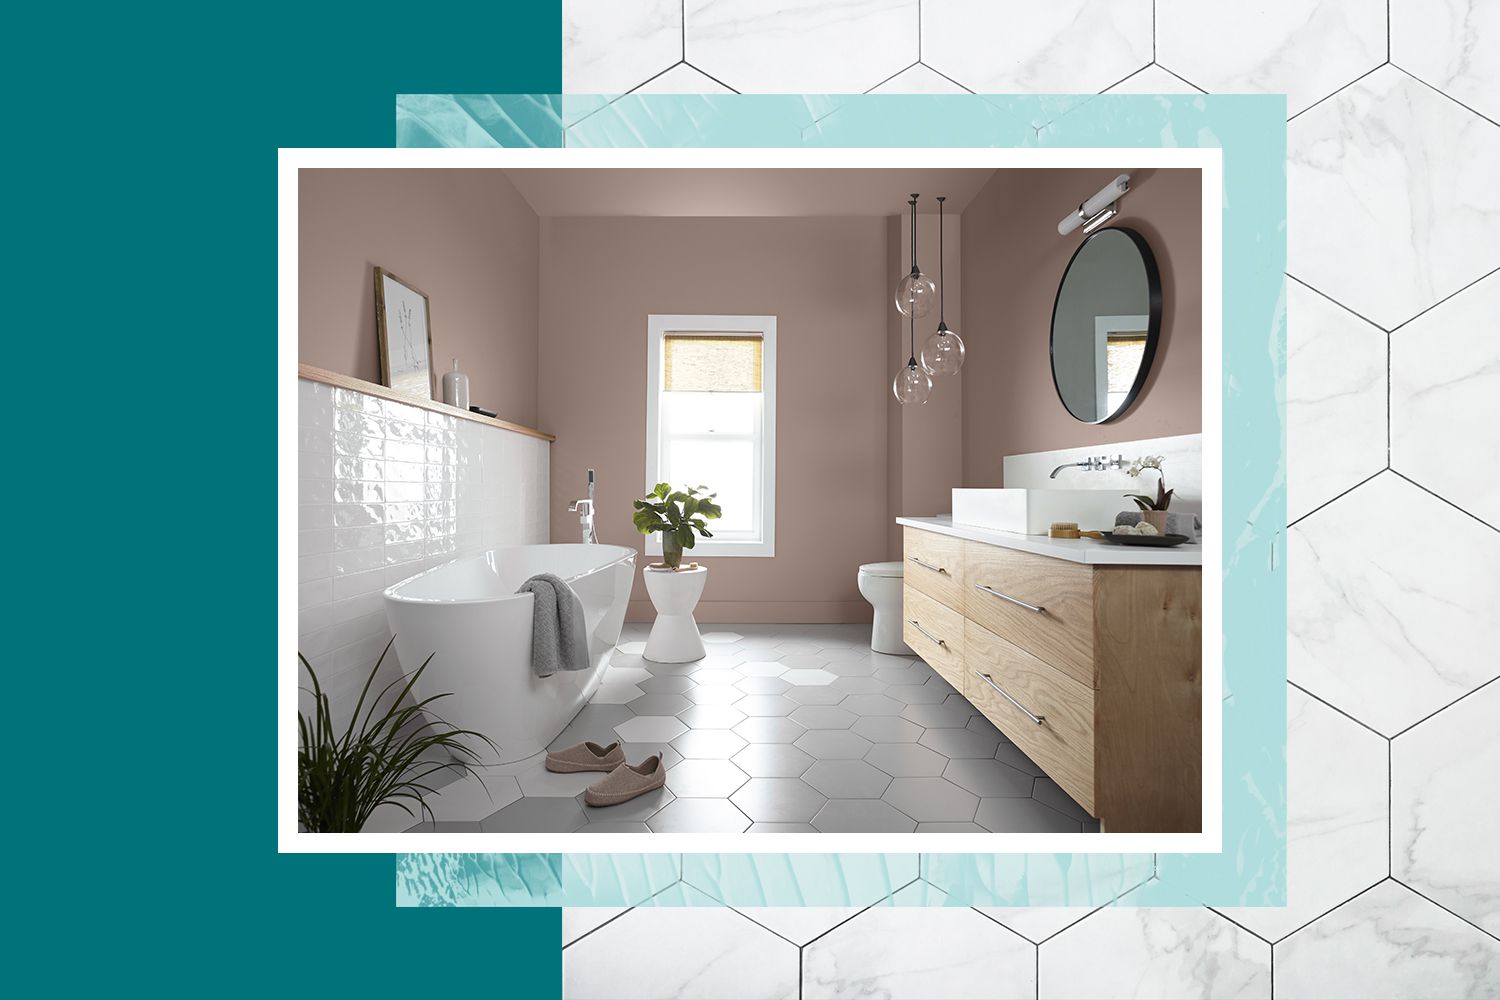 Badezimmer im organischen Modernismus mit Sechseckfliesen, neutraler Farbe, Holzschränken und viel natürlichem Licht 